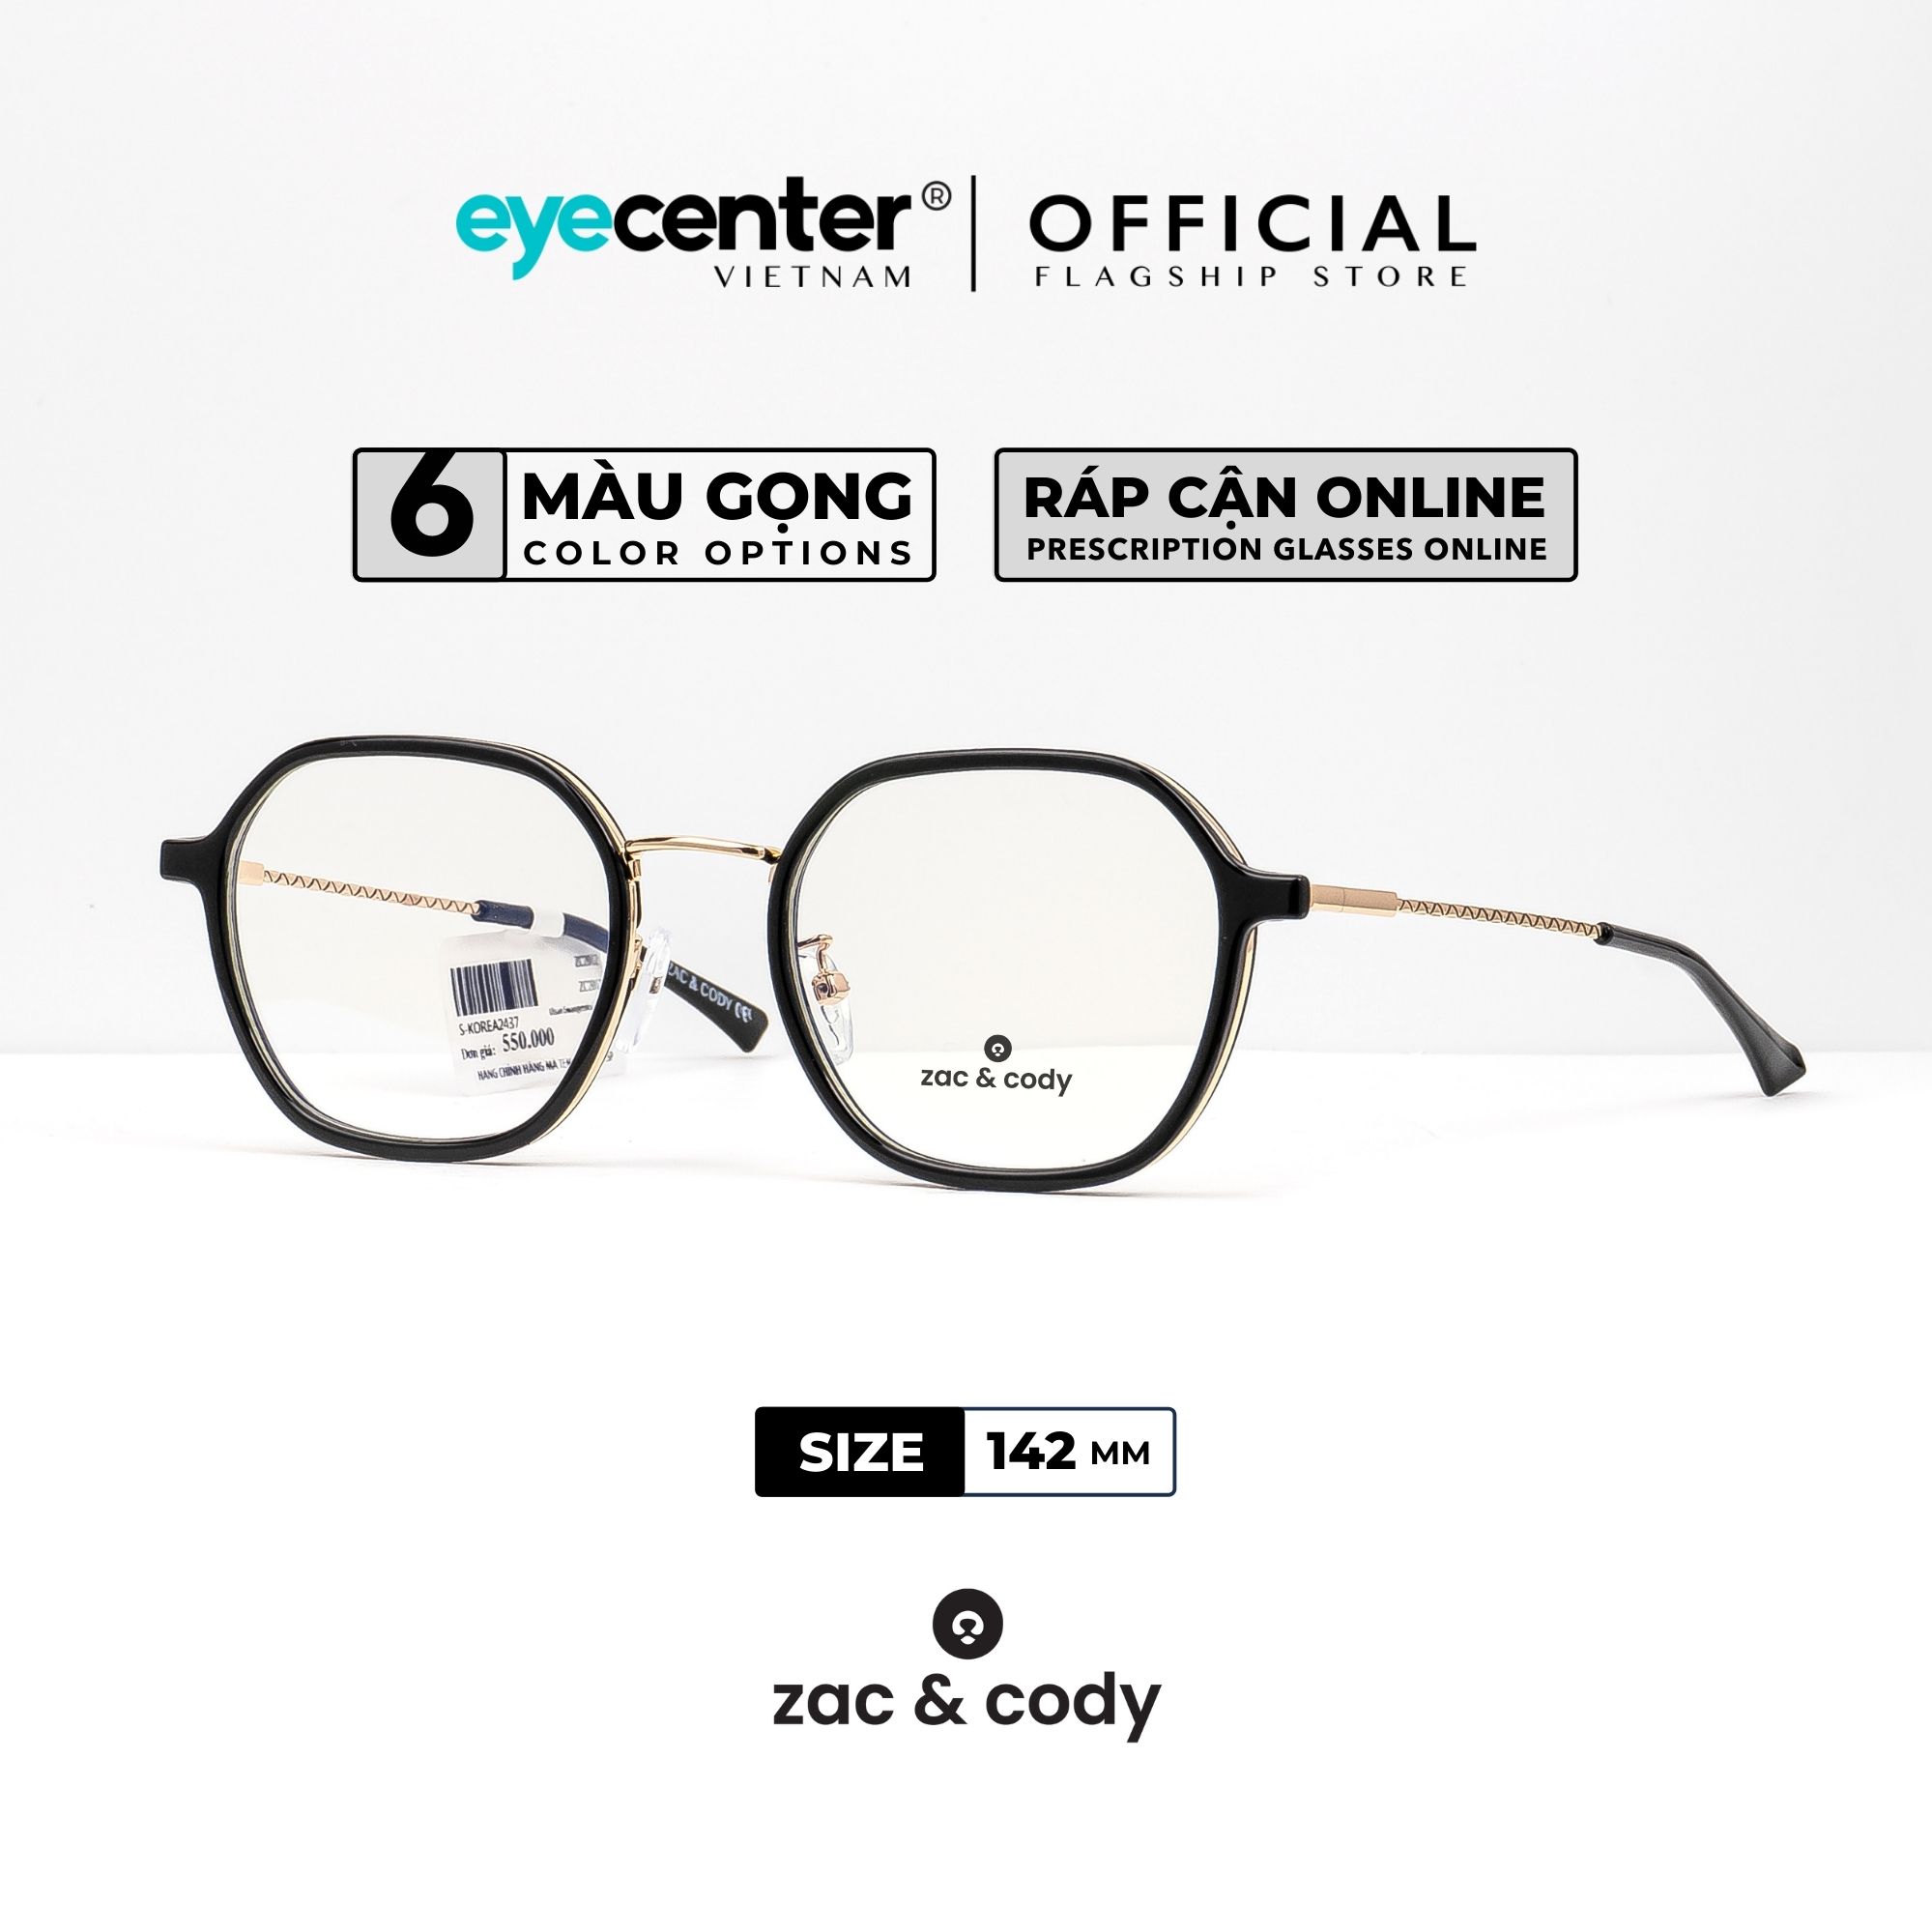 Gọng kính cận nam nữ chính hãng ZAC & CODY B18 kim loại chống gỉ cao cấp nhập khẩu by Eye Center Vietnam